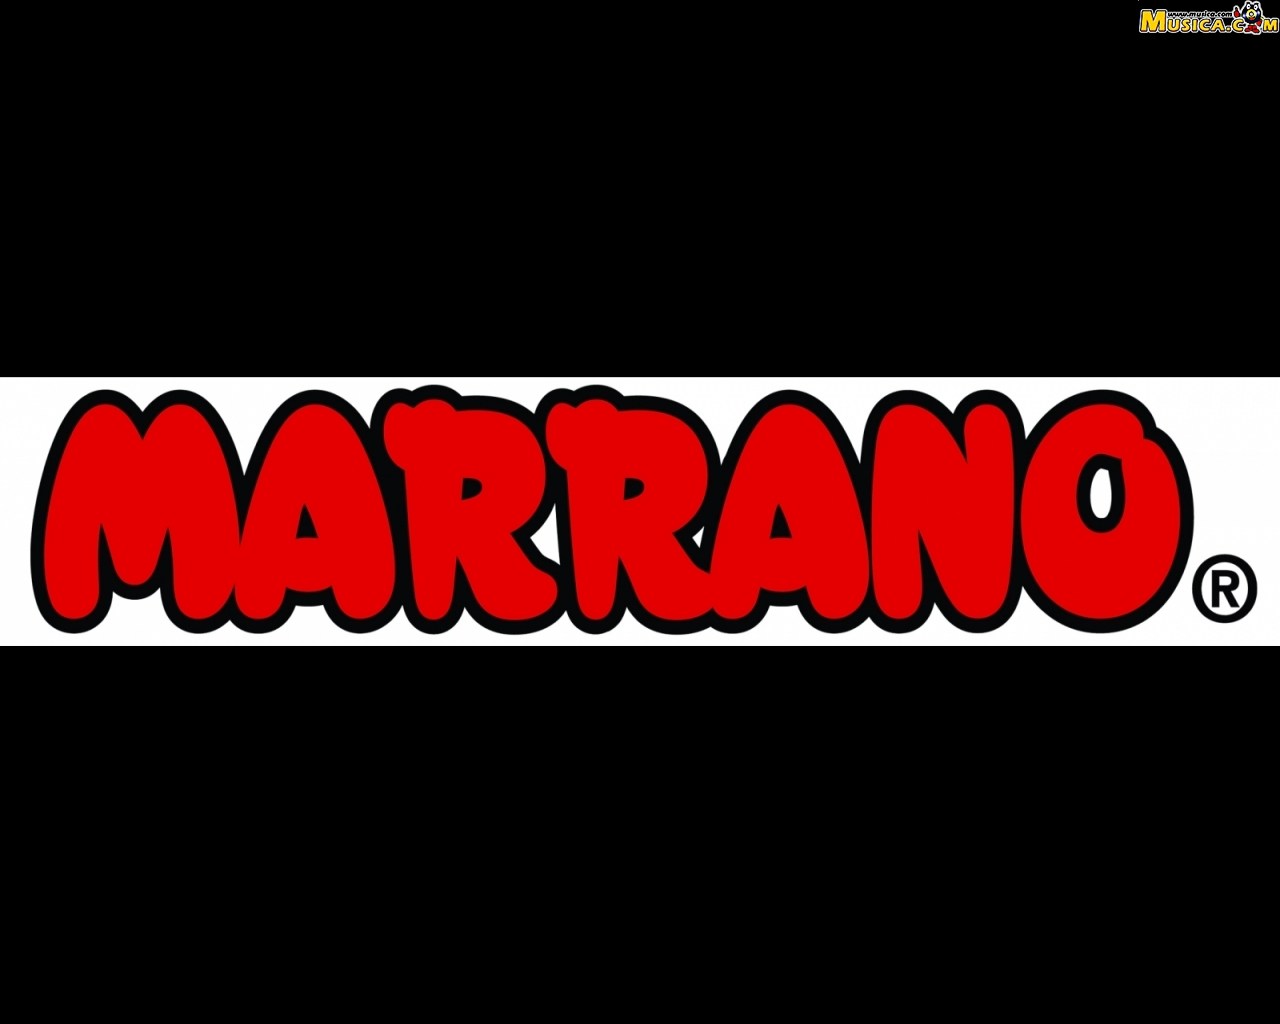 Fondo de pantalla de Grupo Marrano